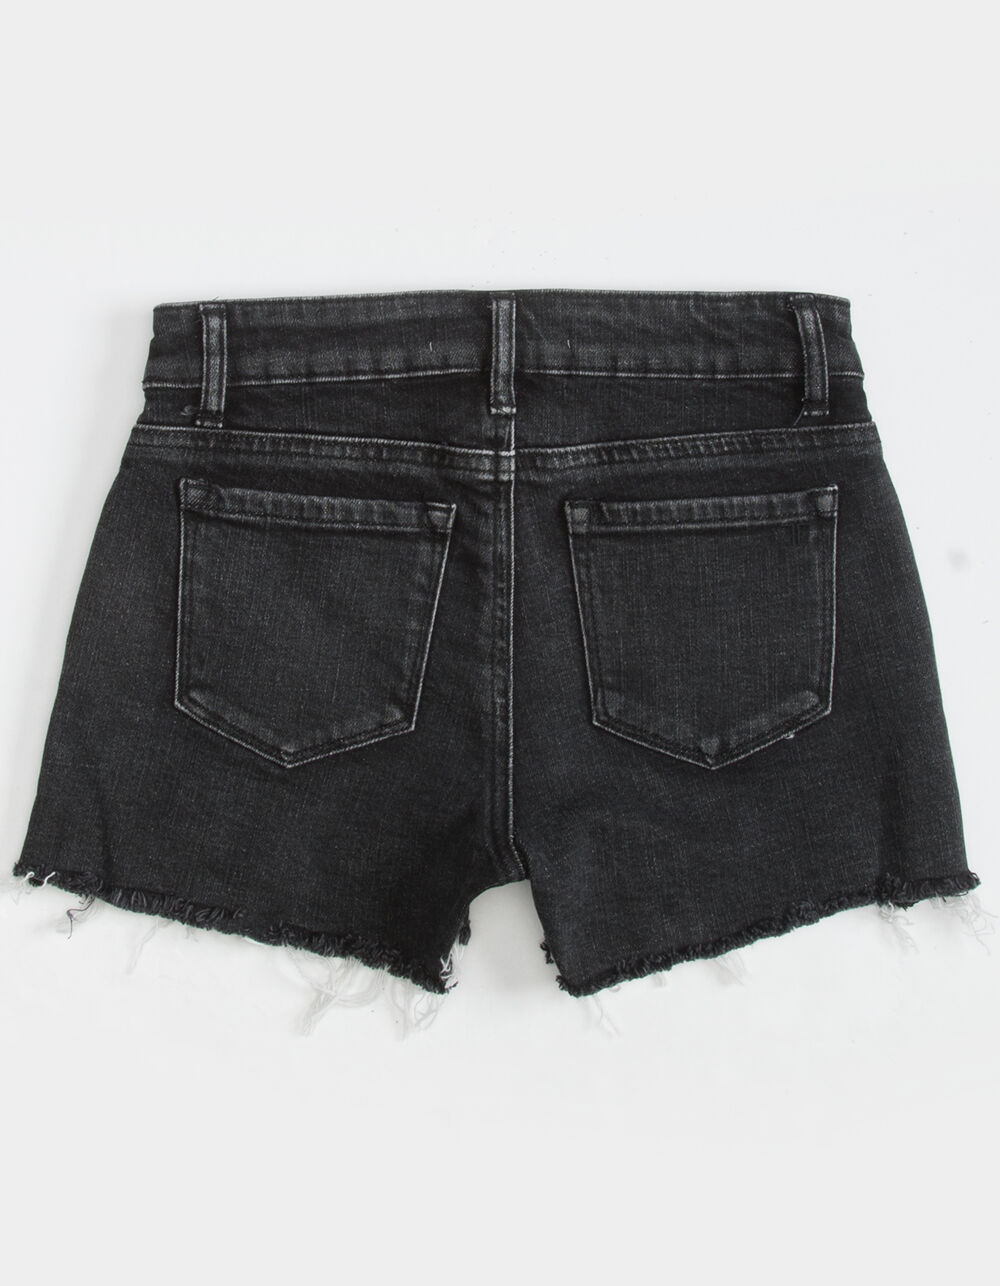 TRACTR Midrise Zipper Girls Shorts - GRAY | Tillys